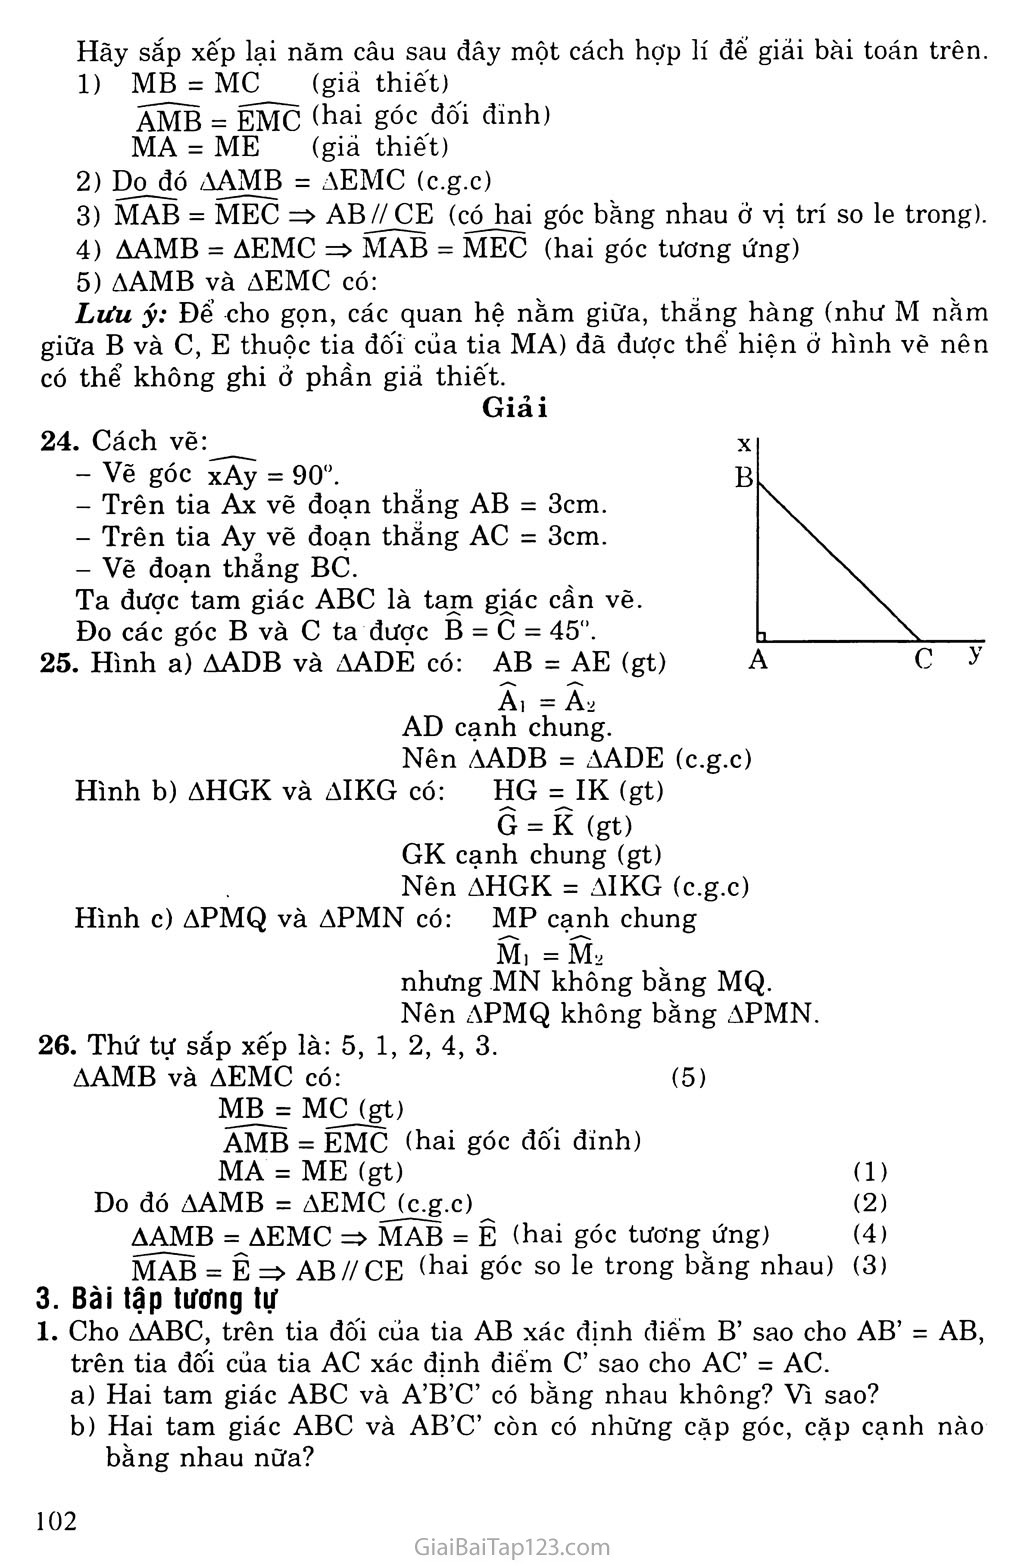 Bài 4. Trường hợp bằng nhau thứ hai của tam giác: cạnh - góc - canh (c. g. c) trang 3